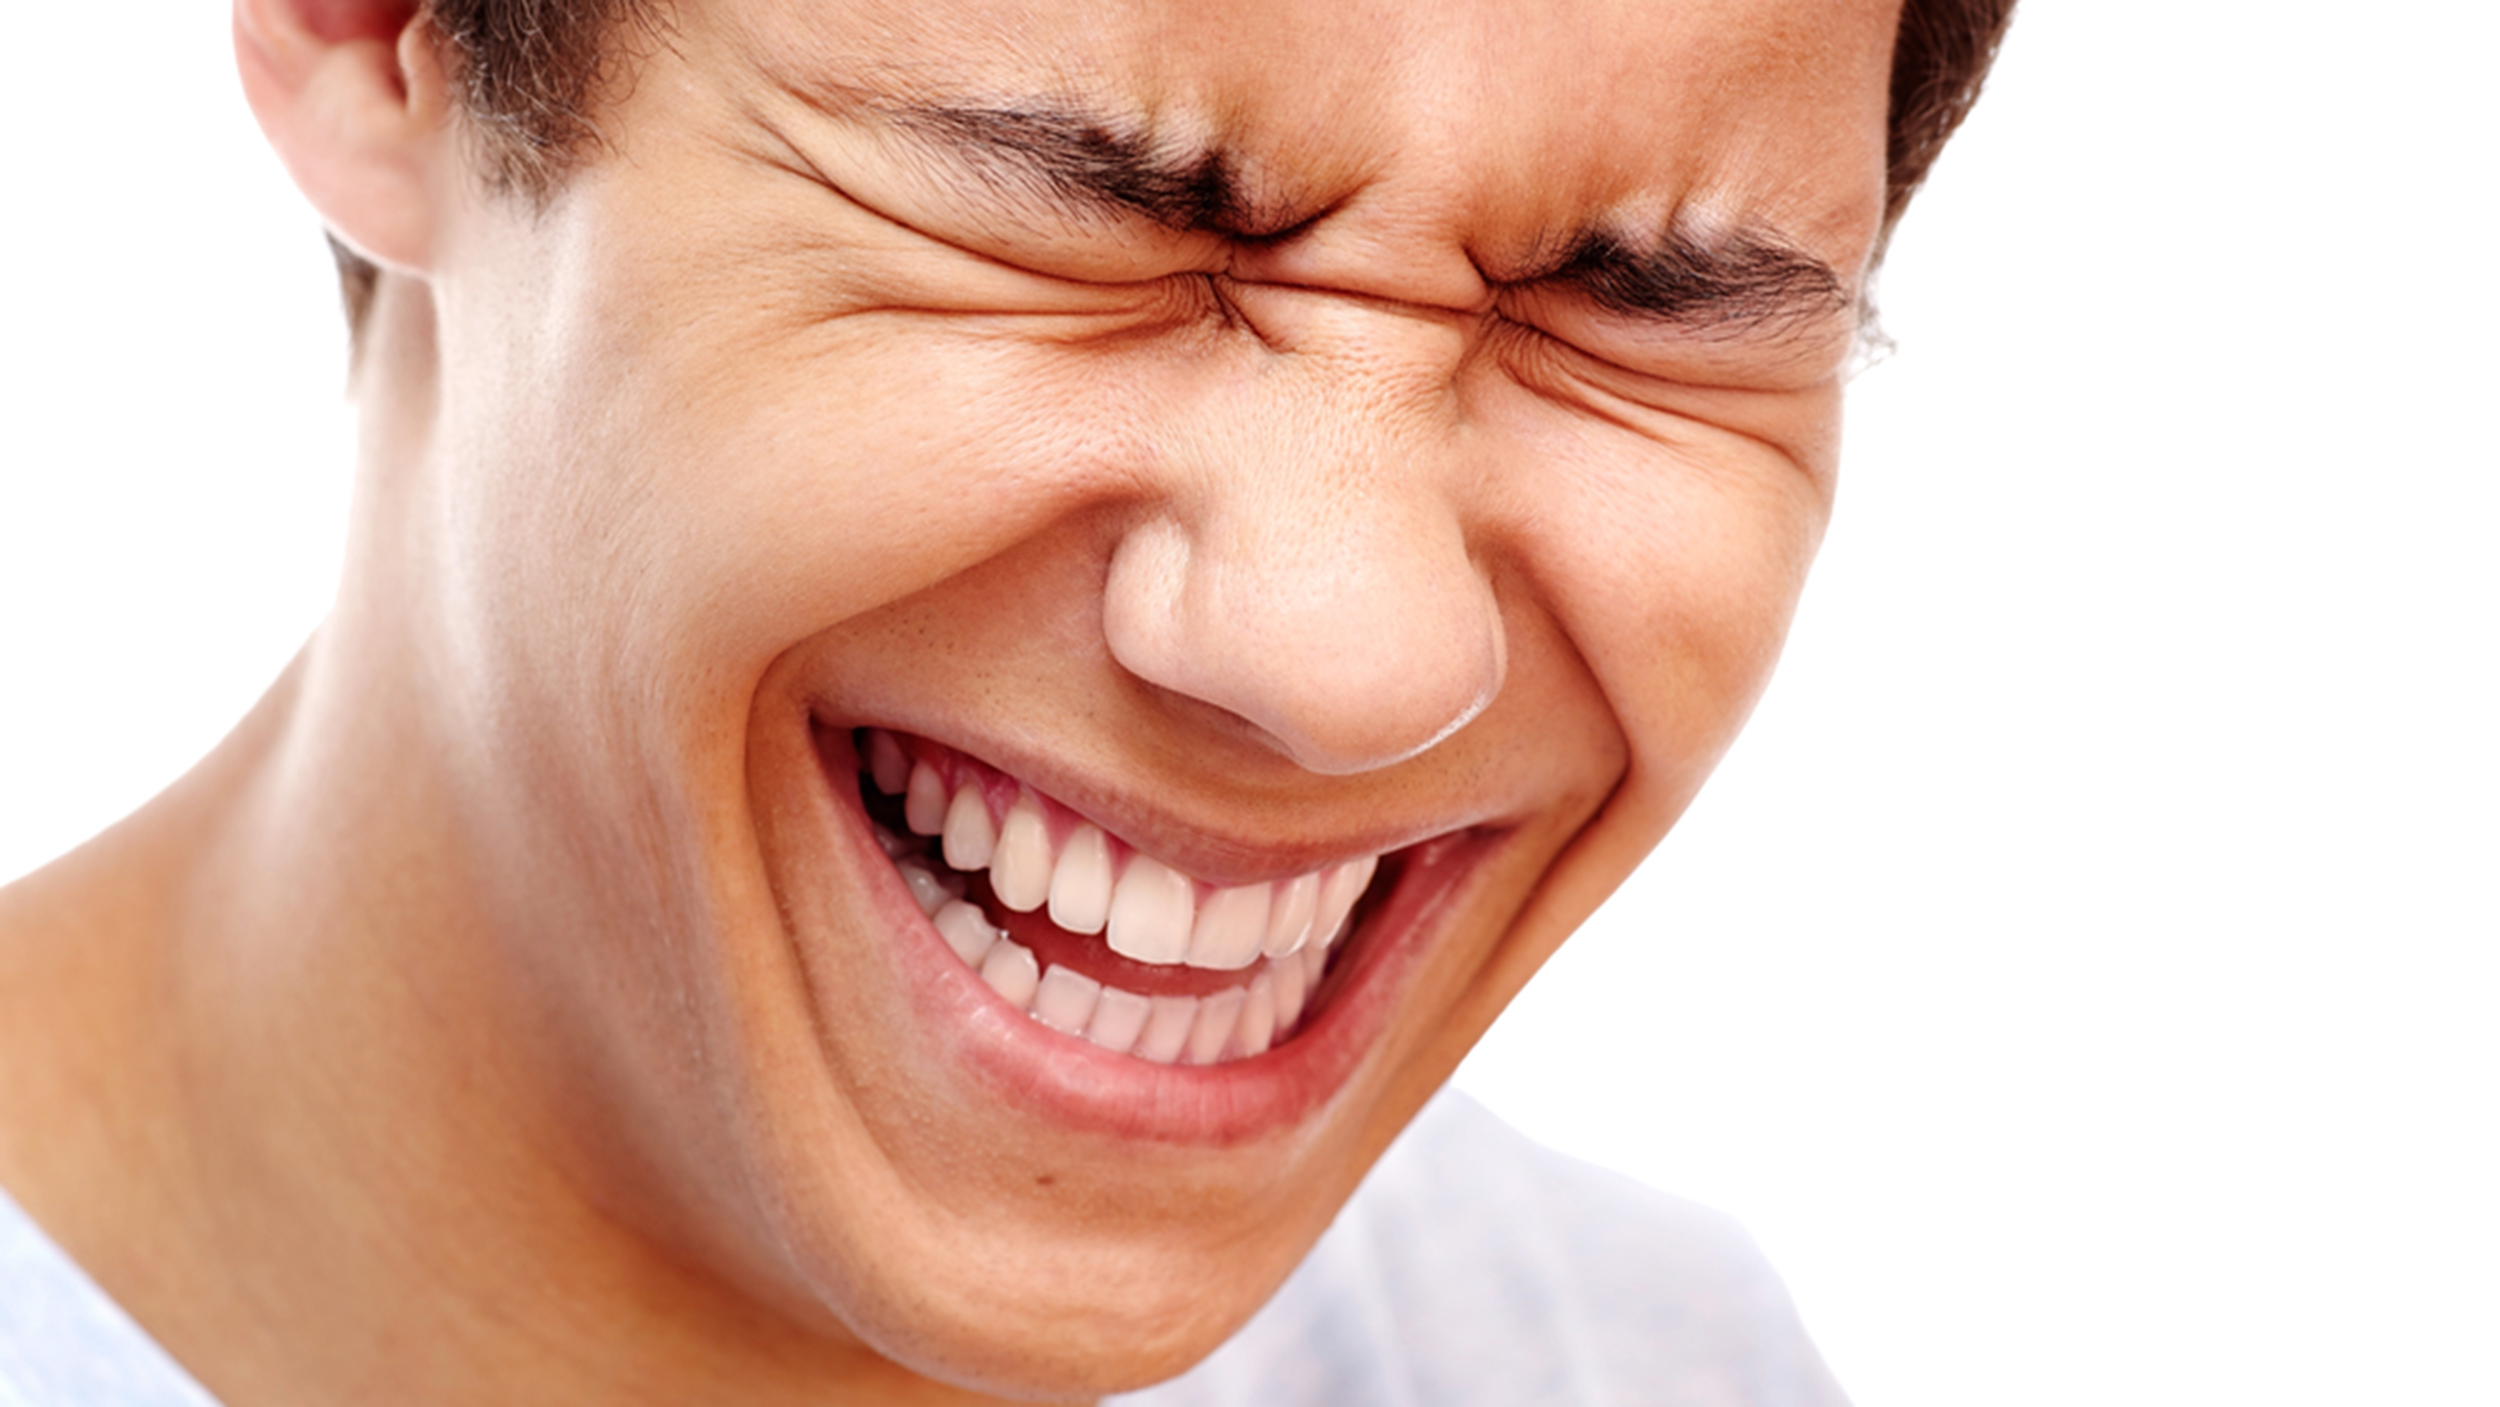 LOL' vs. 'haha': Facebook study reveals how we laugh online - TODAY.com